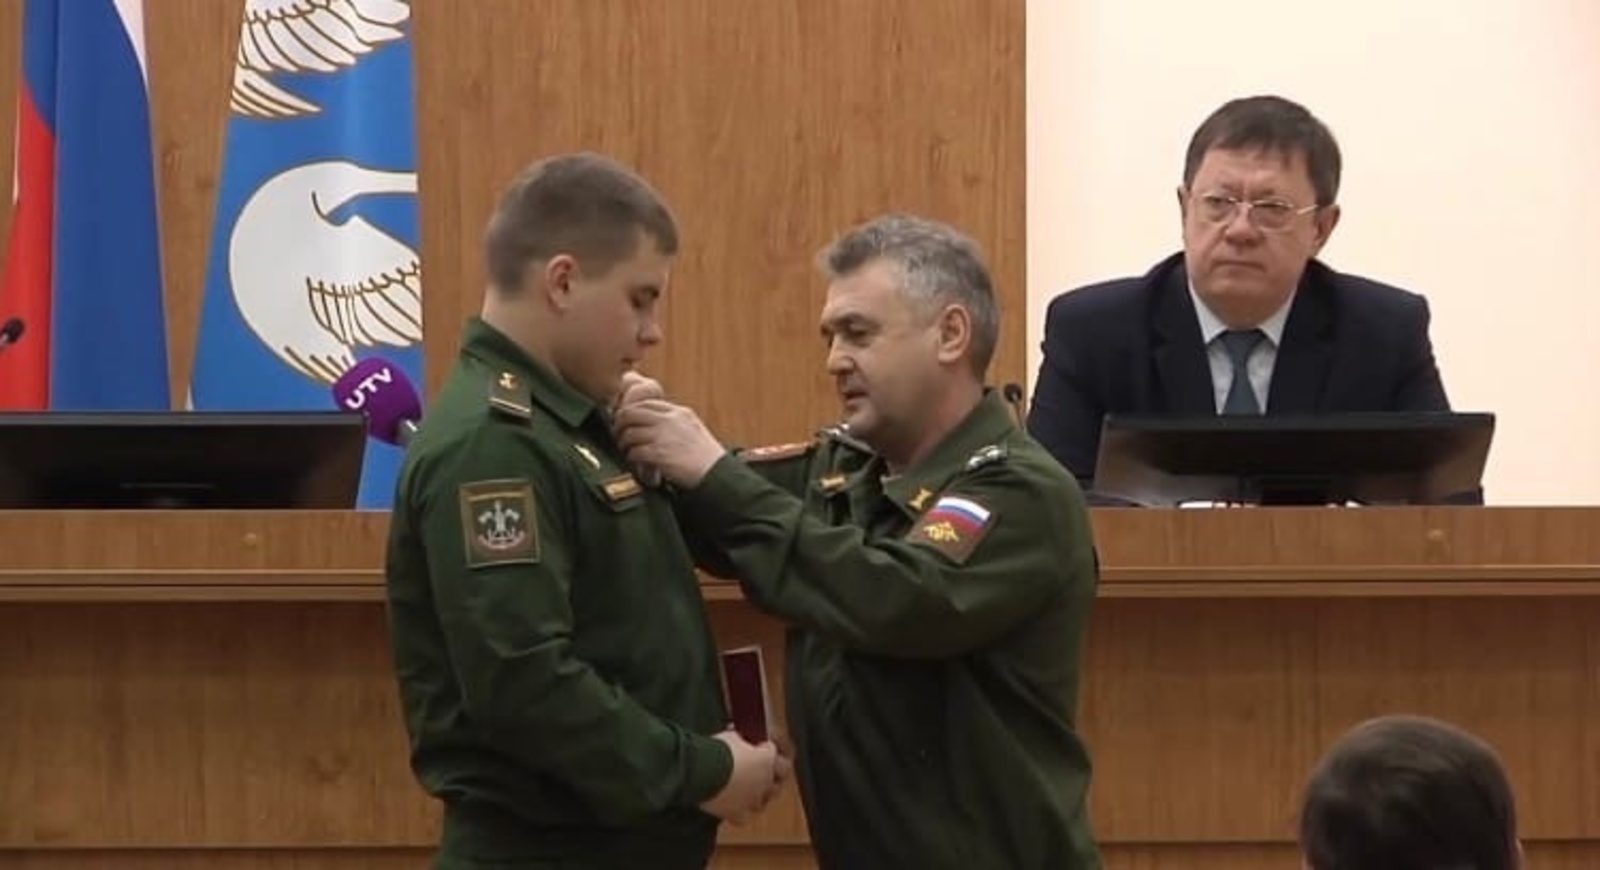 Участнику спецоперации из Стерлитамака вручили медаль Жукова за мужество и отвагу